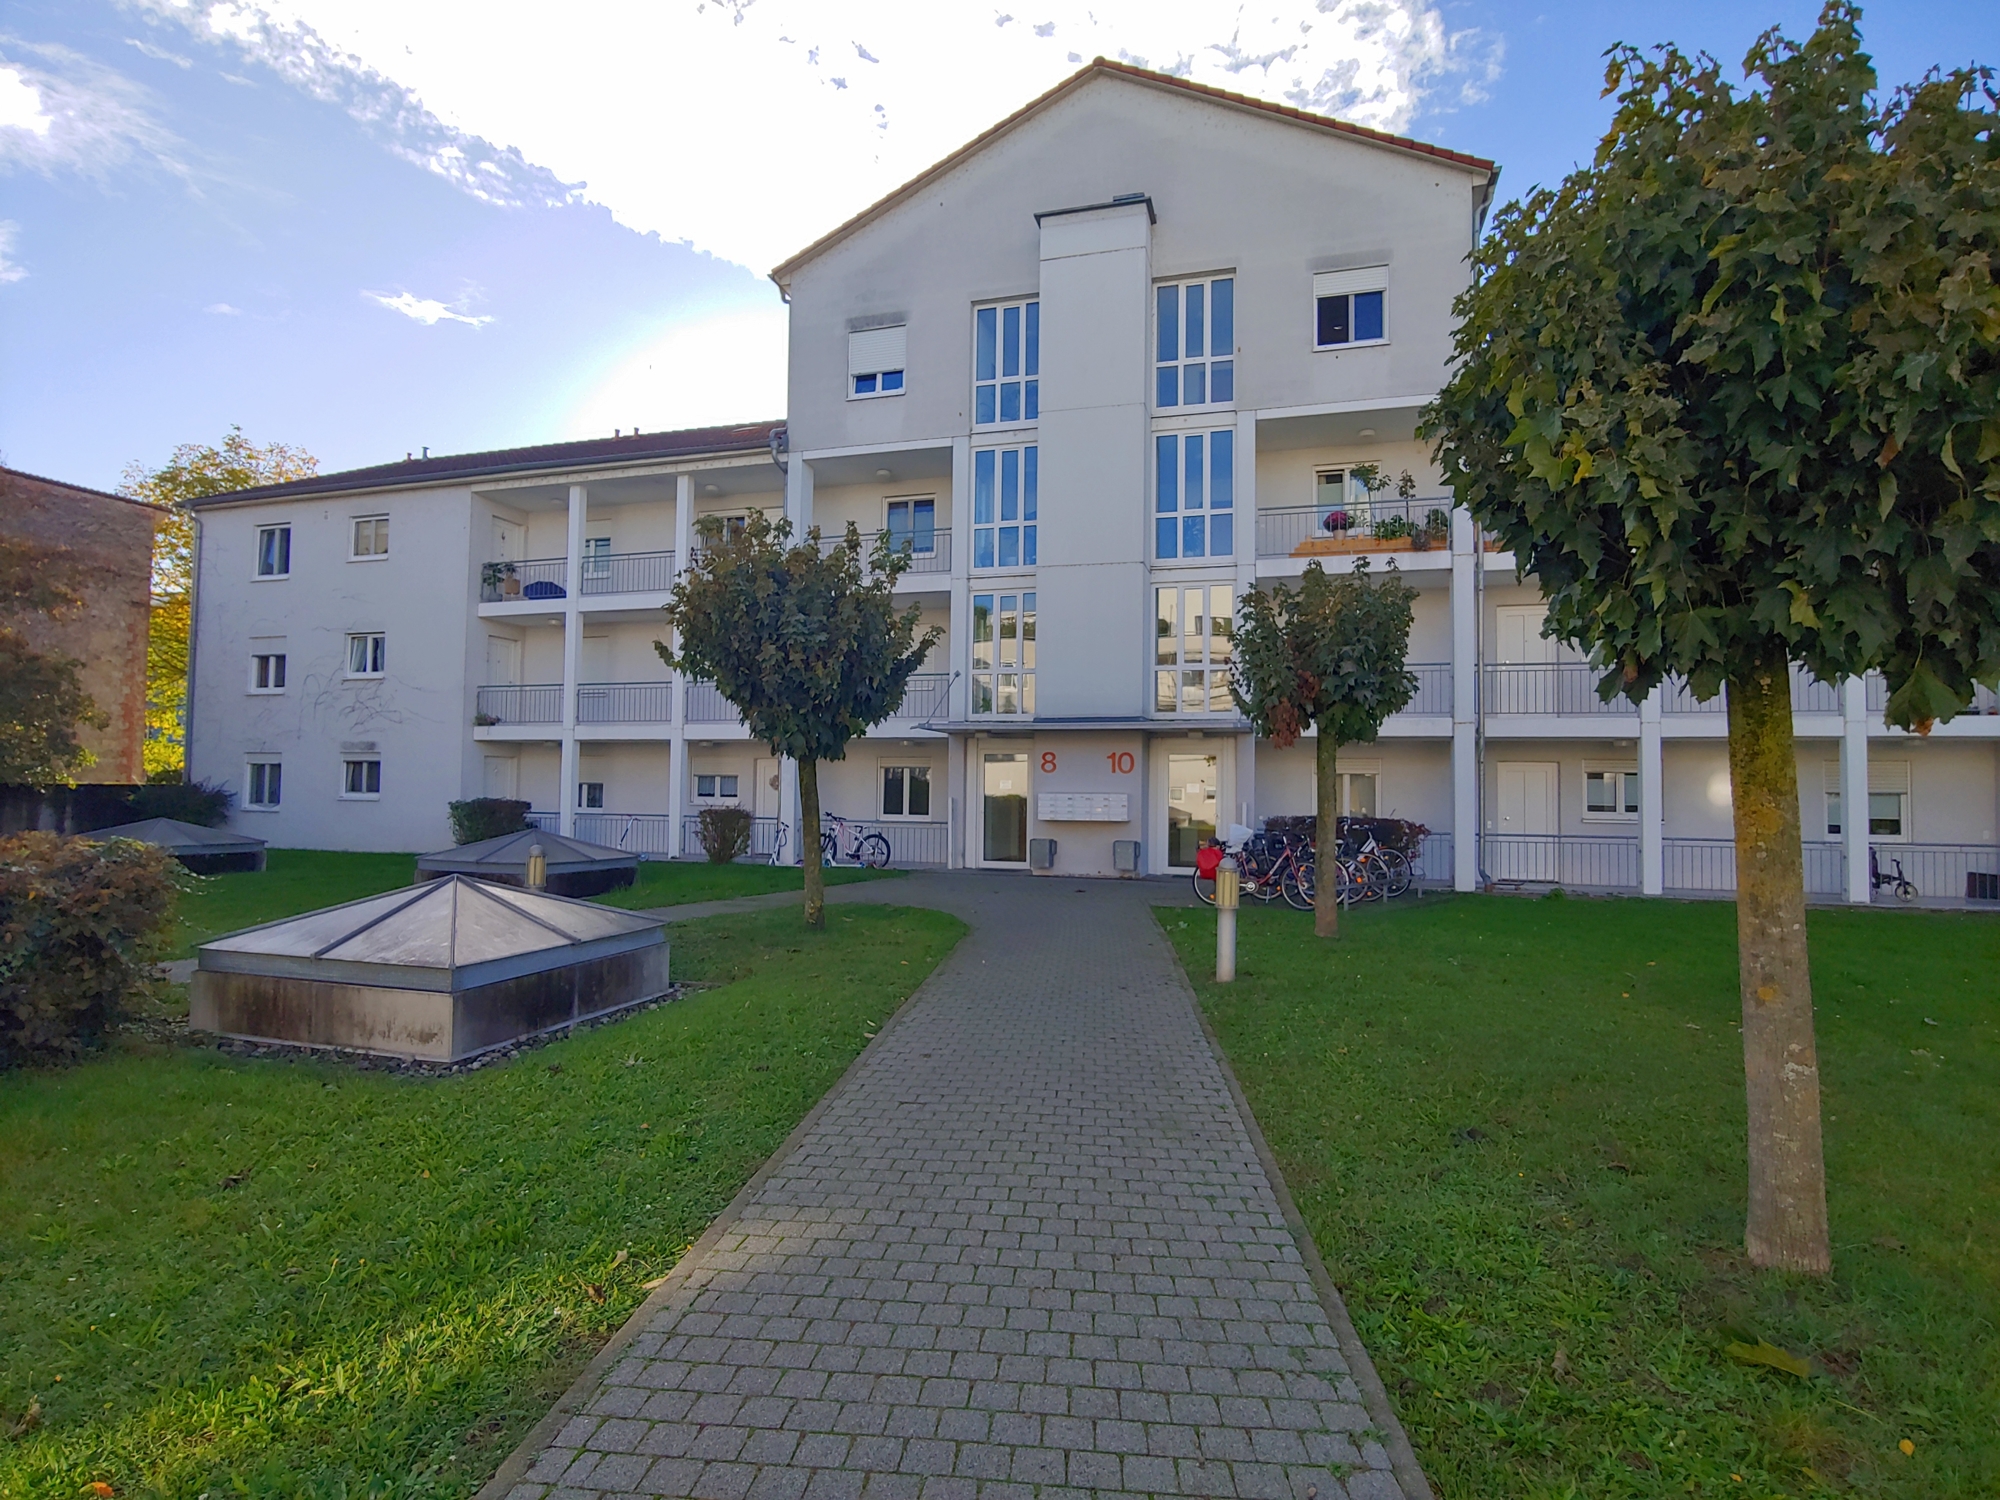 Perfekte Kapitalanlage bzw. Eigentumswohnung im Zentrum von Rheinfelden (TG)!